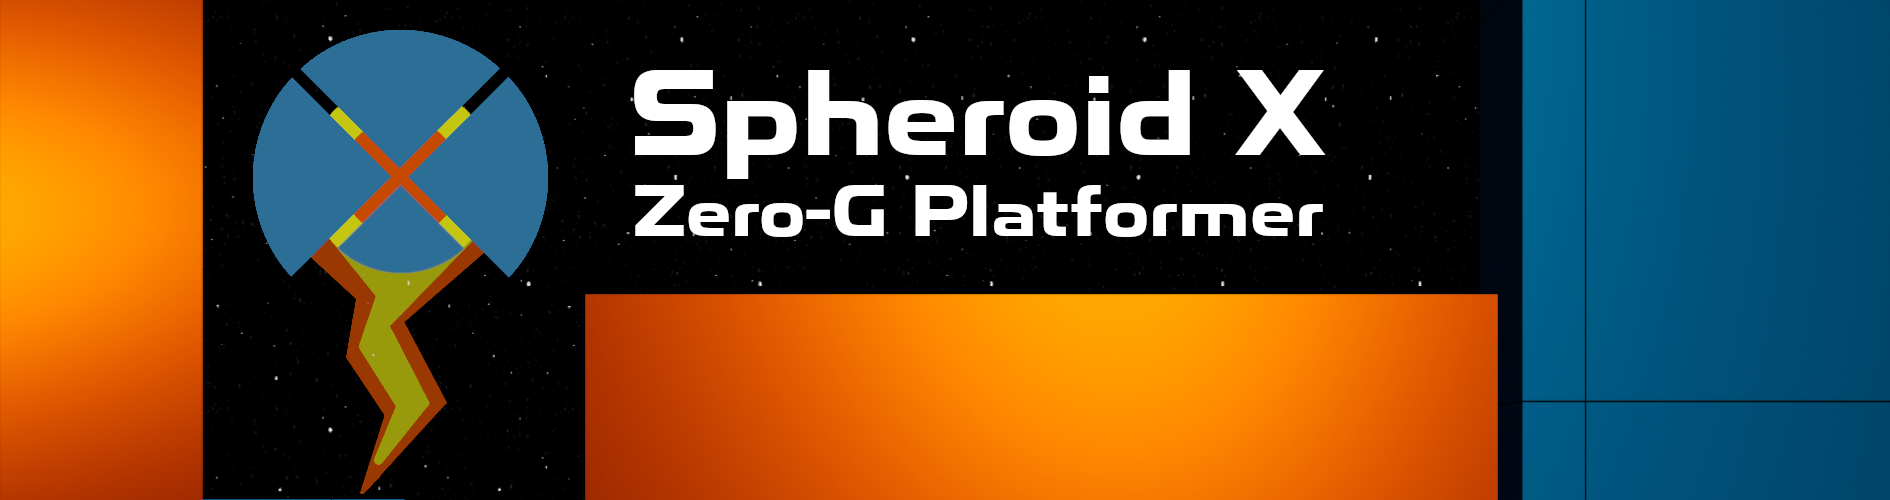 Spheroid X: Zero-G Platformer